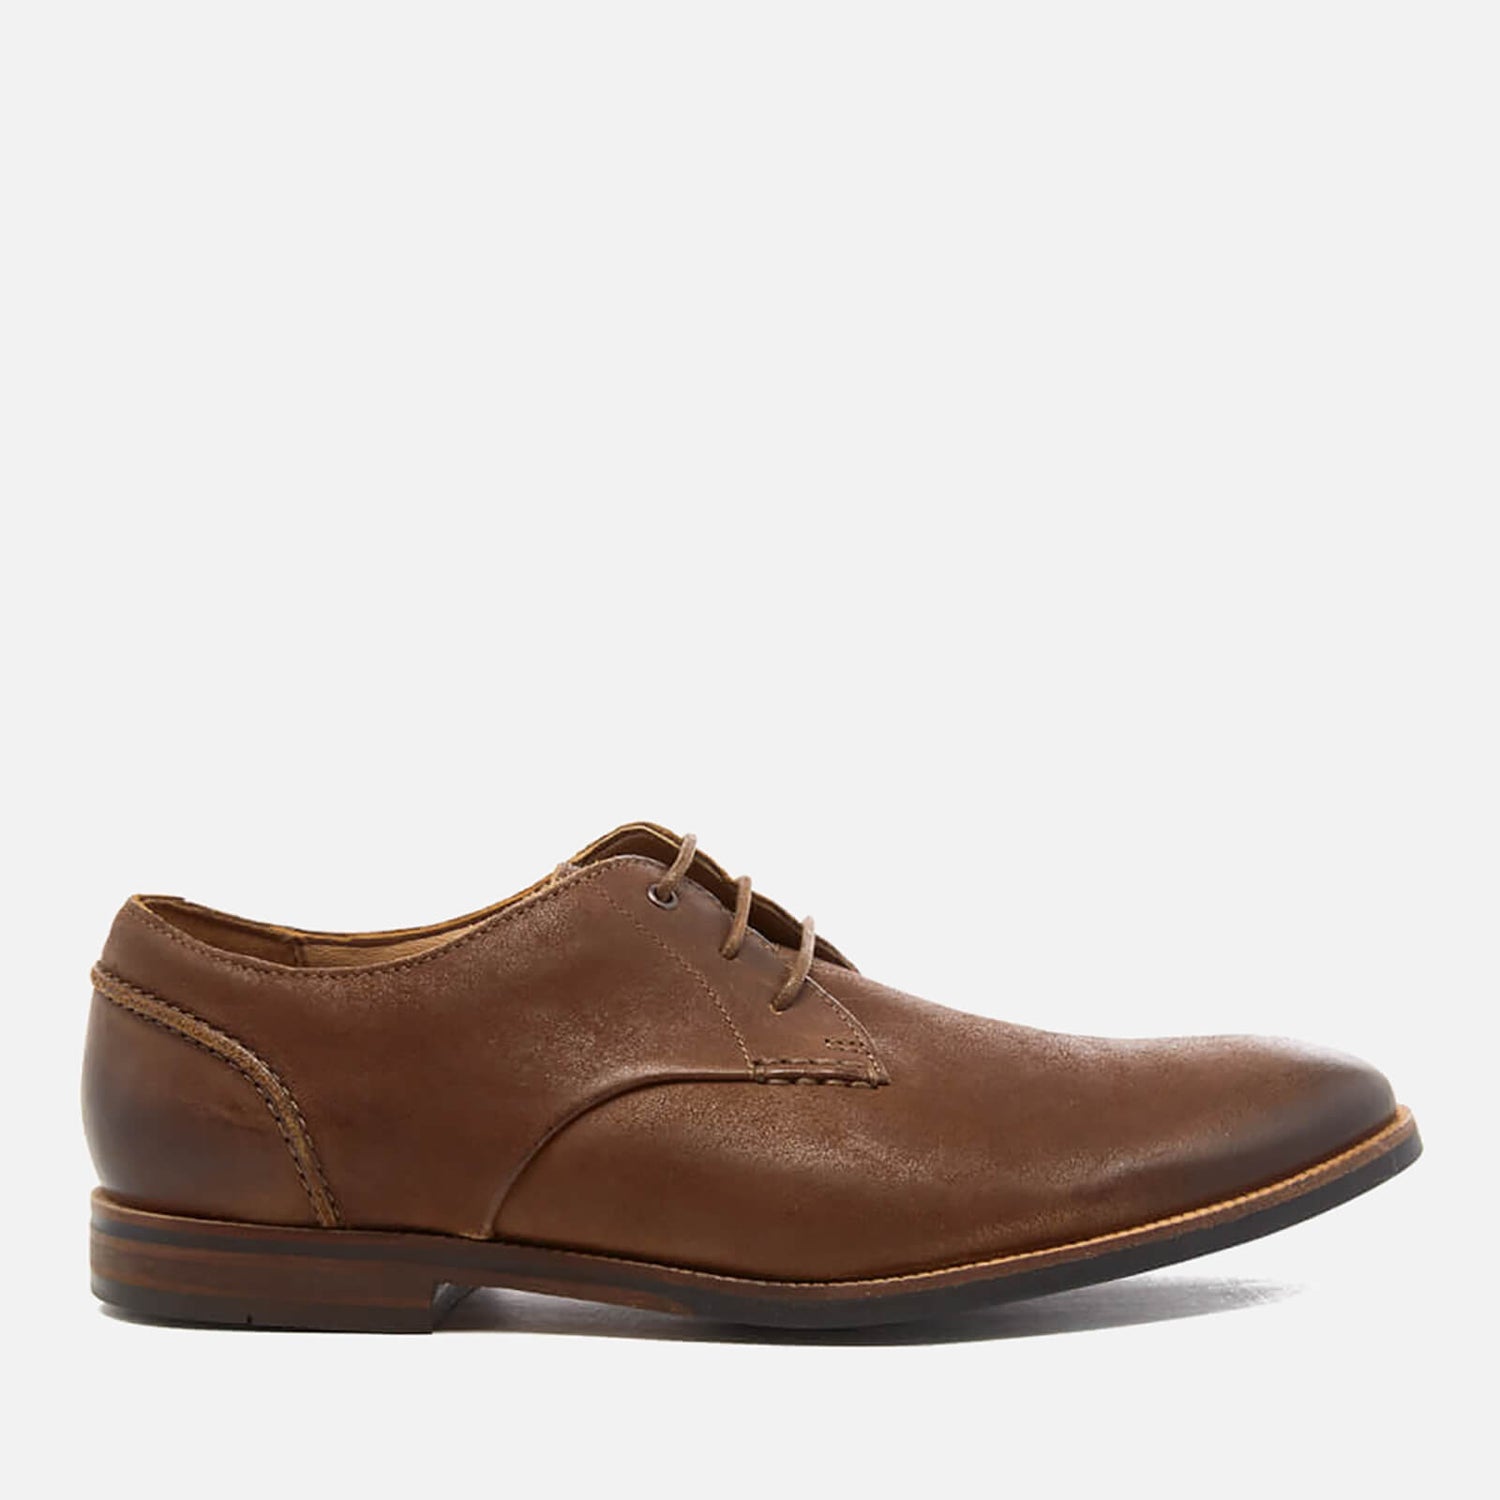 habilitar joyería Adquisición Clarks Men's Broyd Walk Leather Derby Shoes - Tan | TheHut.com